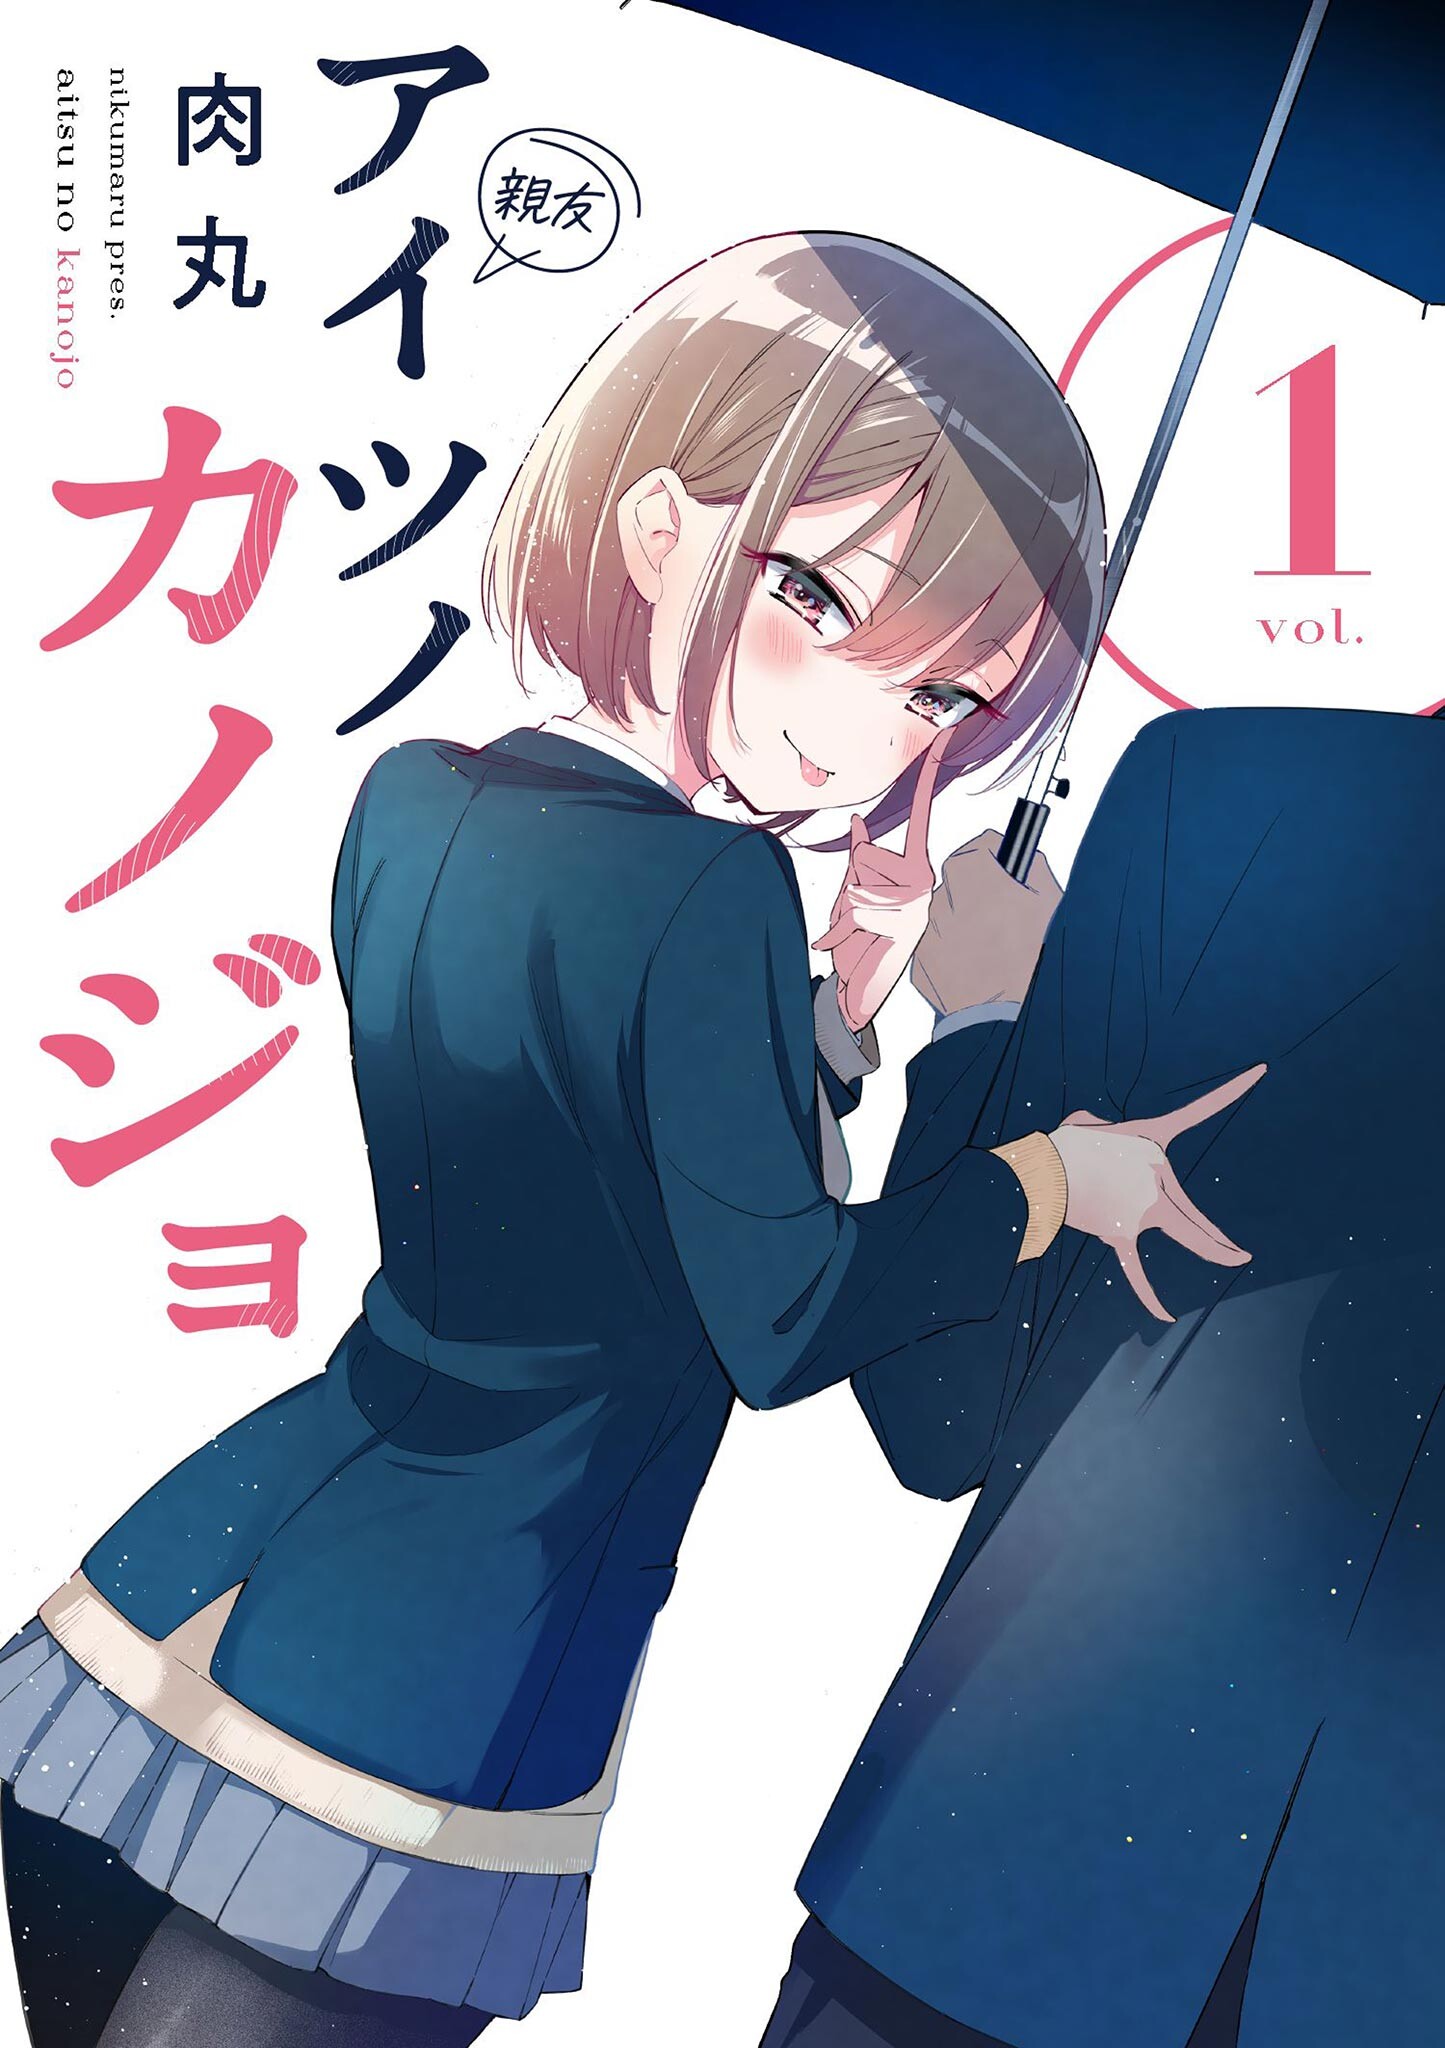 Aitsu no kanojo manga